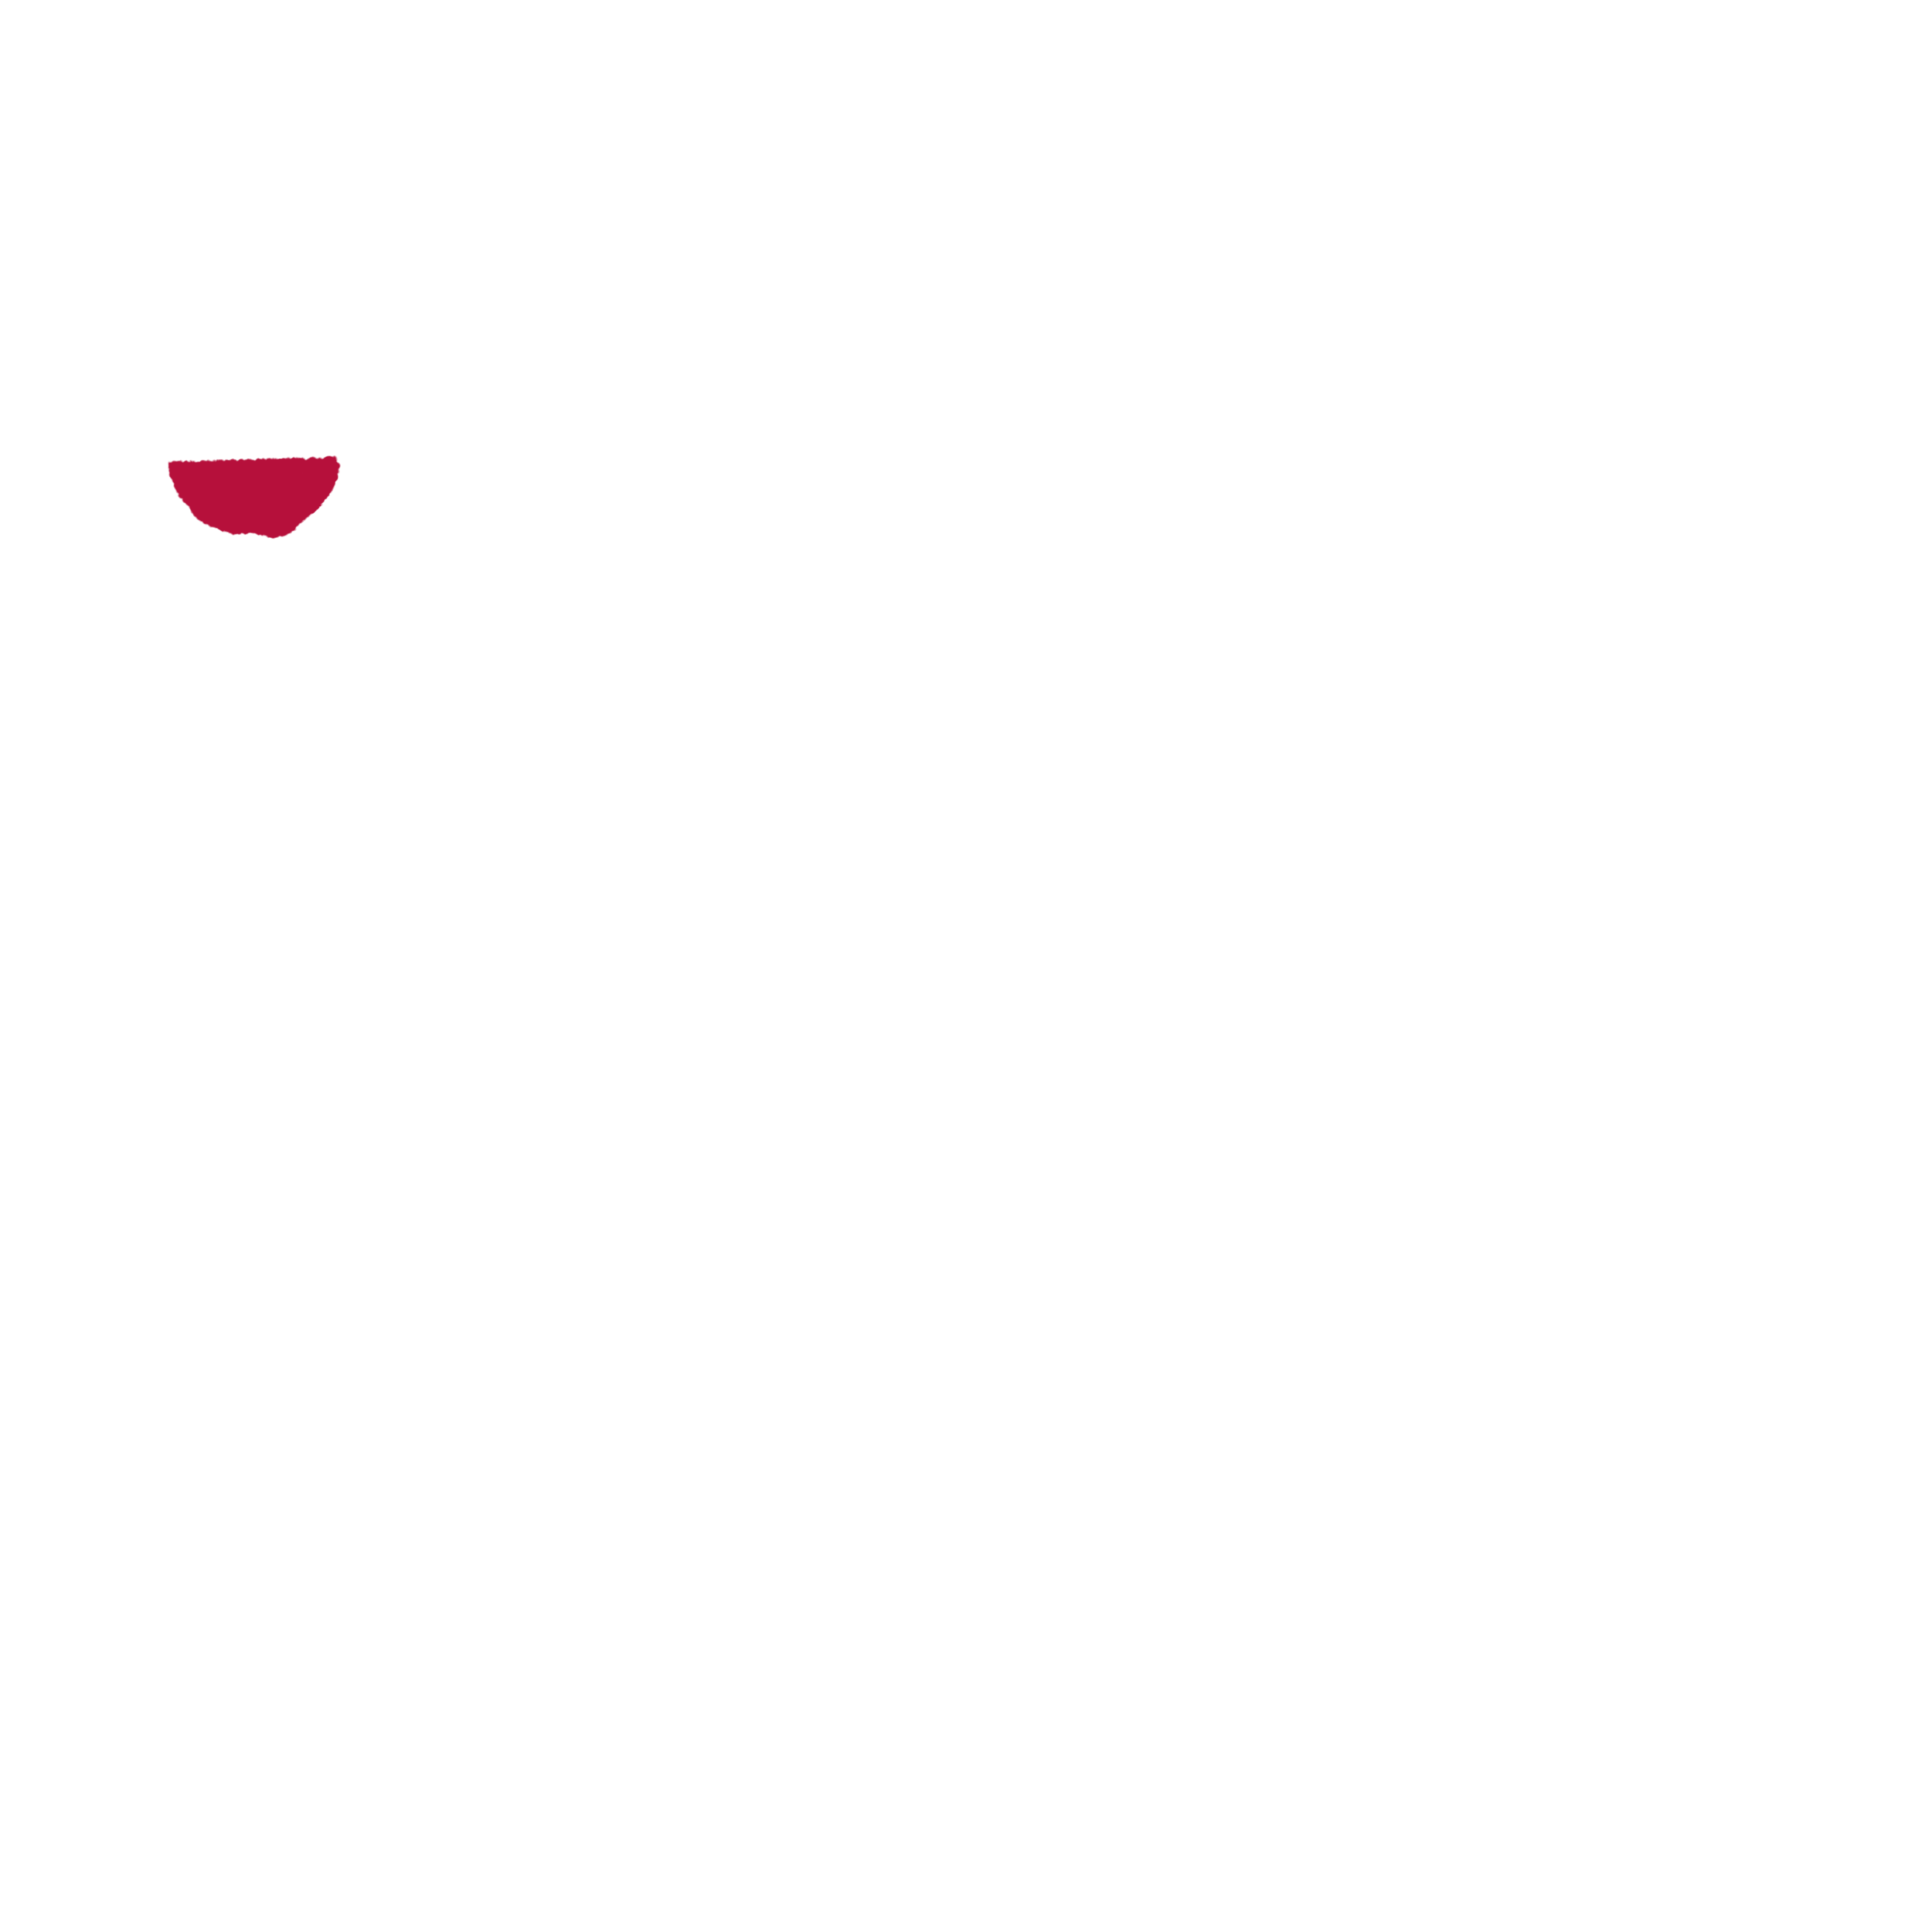 Eri's wine club